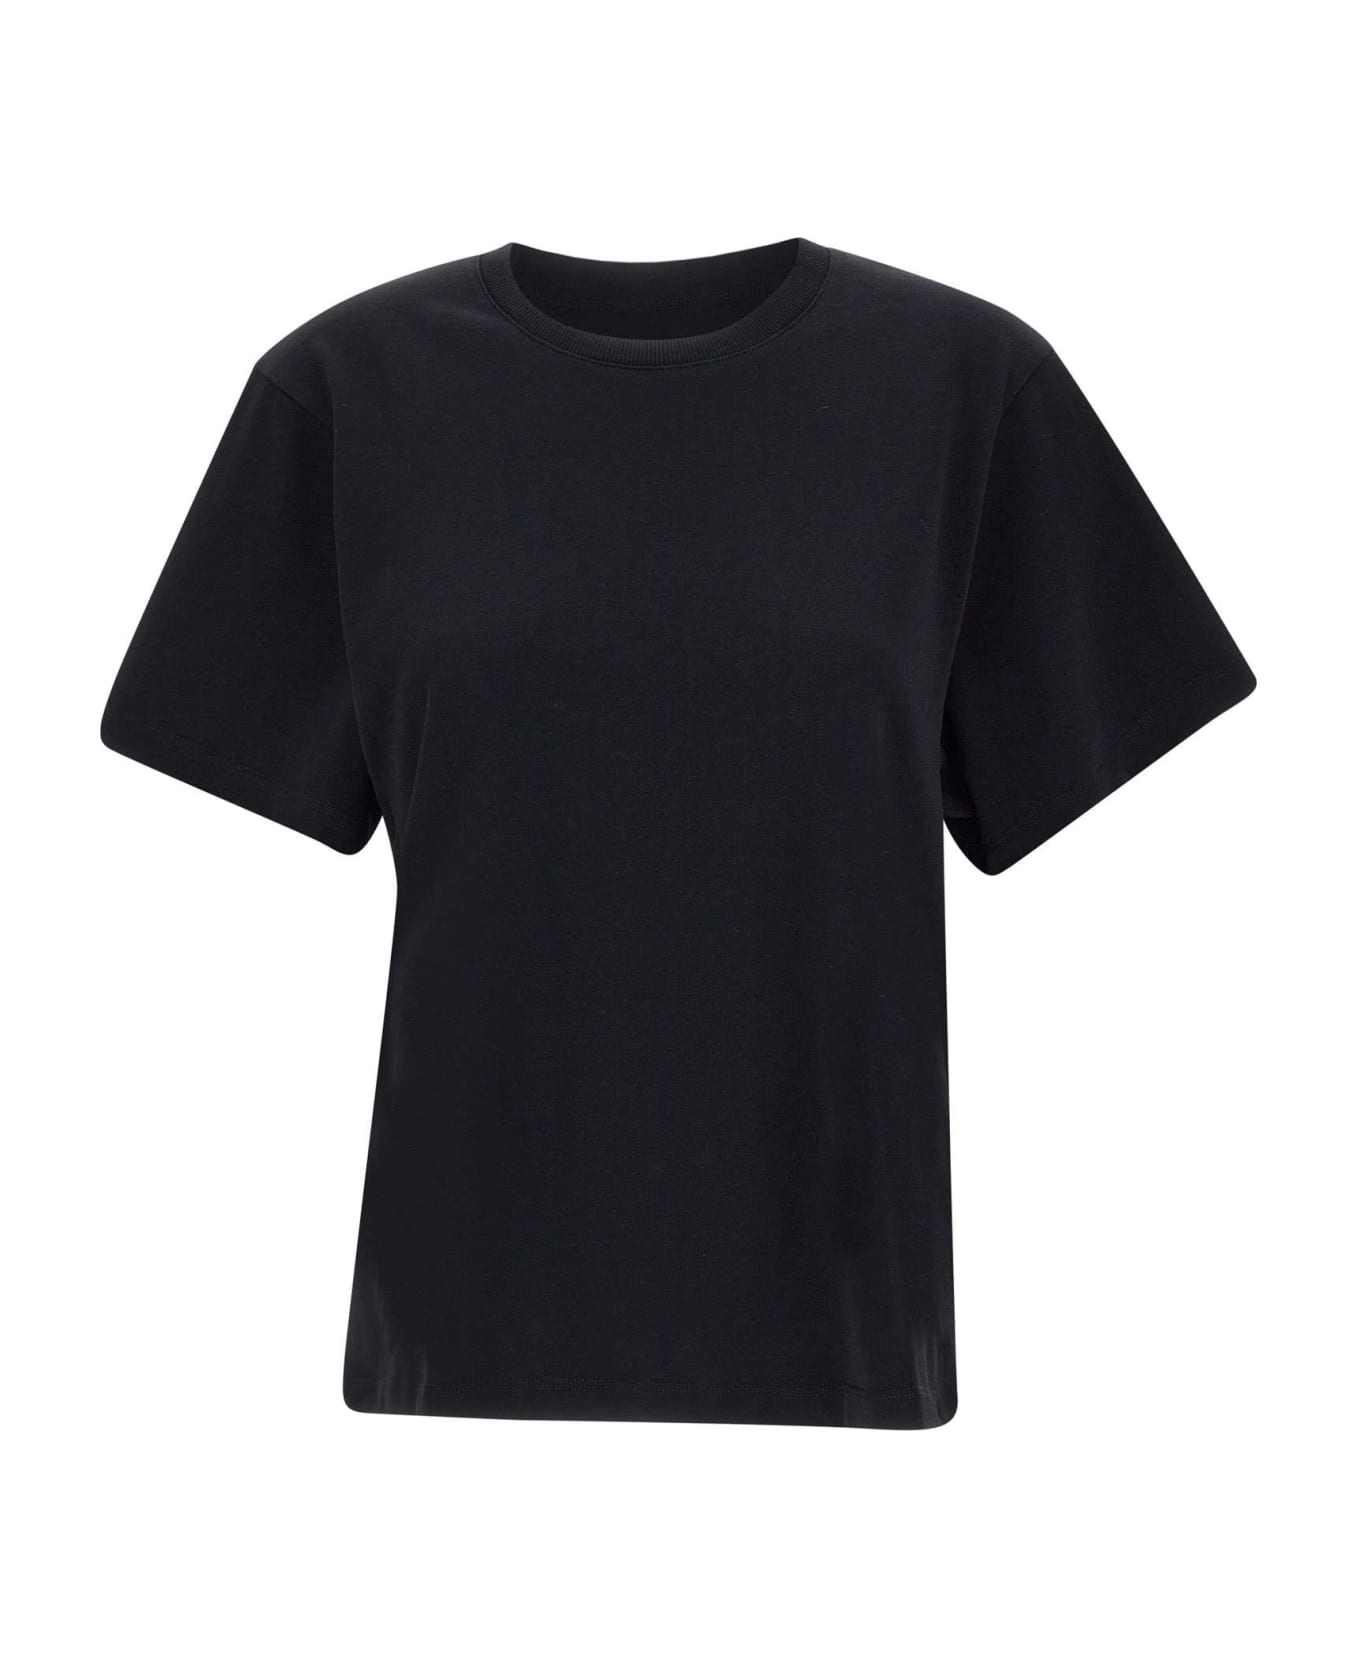 IRO "umae" T-shirt - BLACK Tシャツ